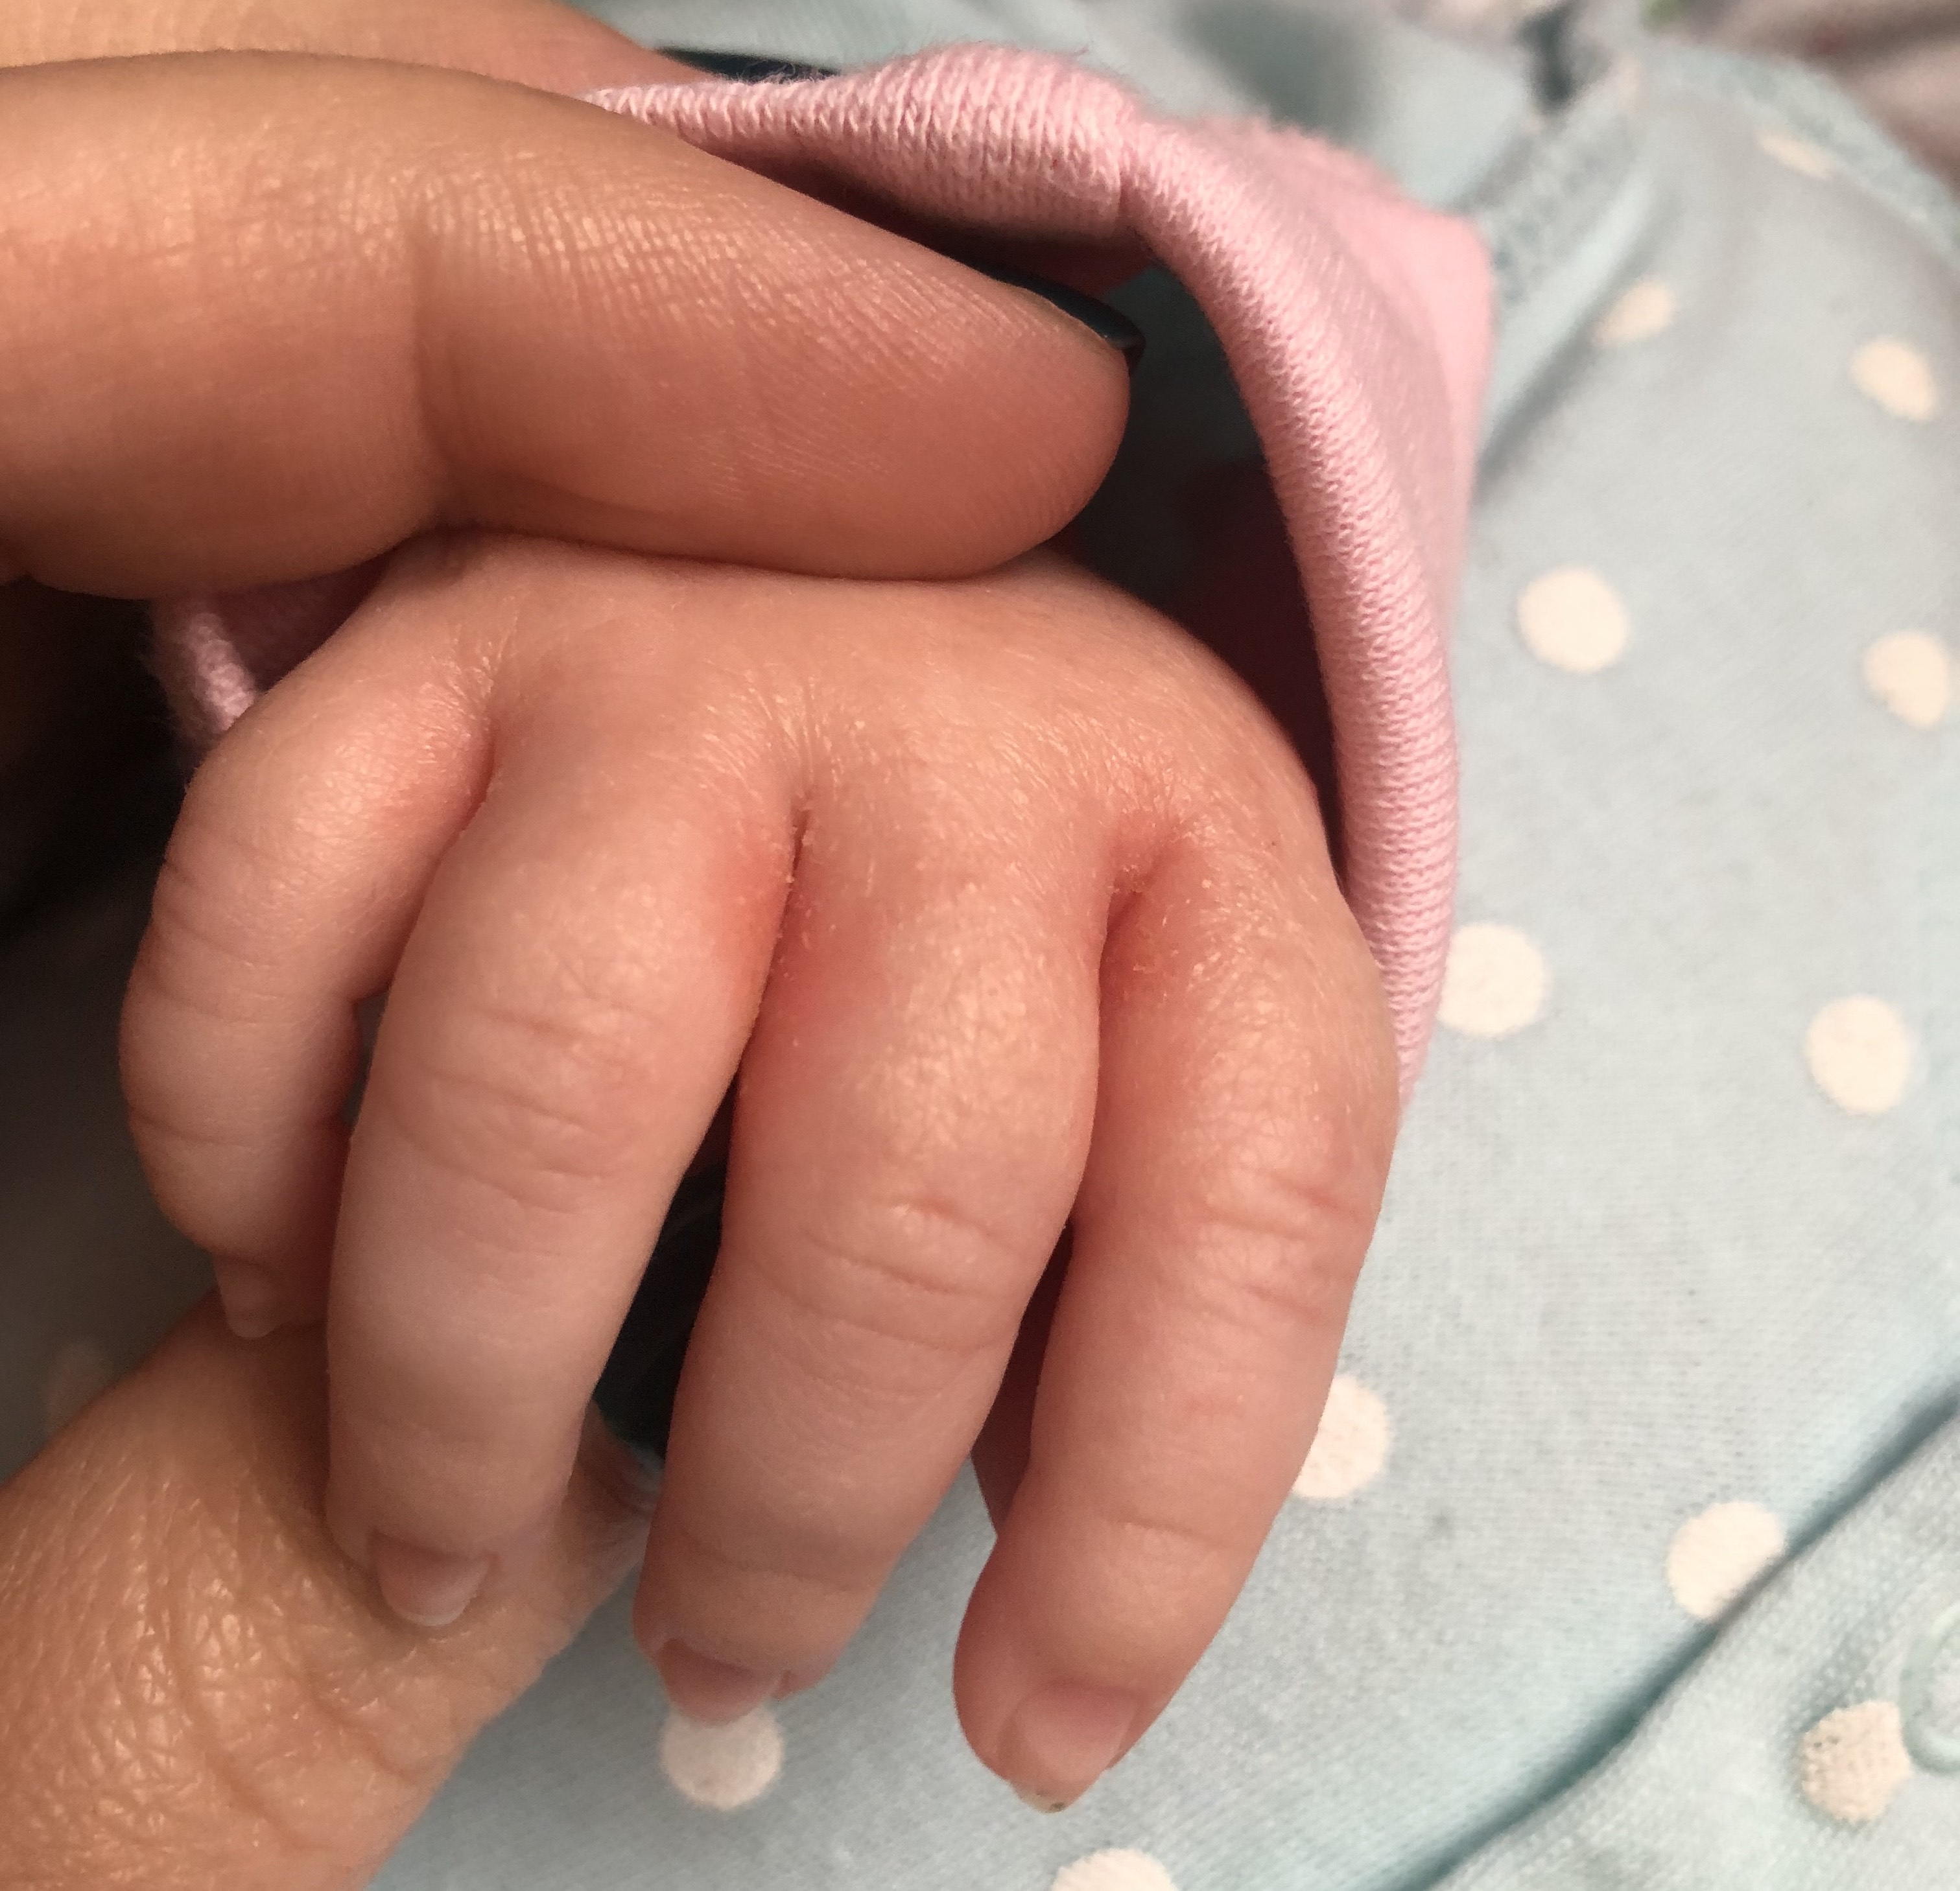 Сыпь между пальцами у ребенка